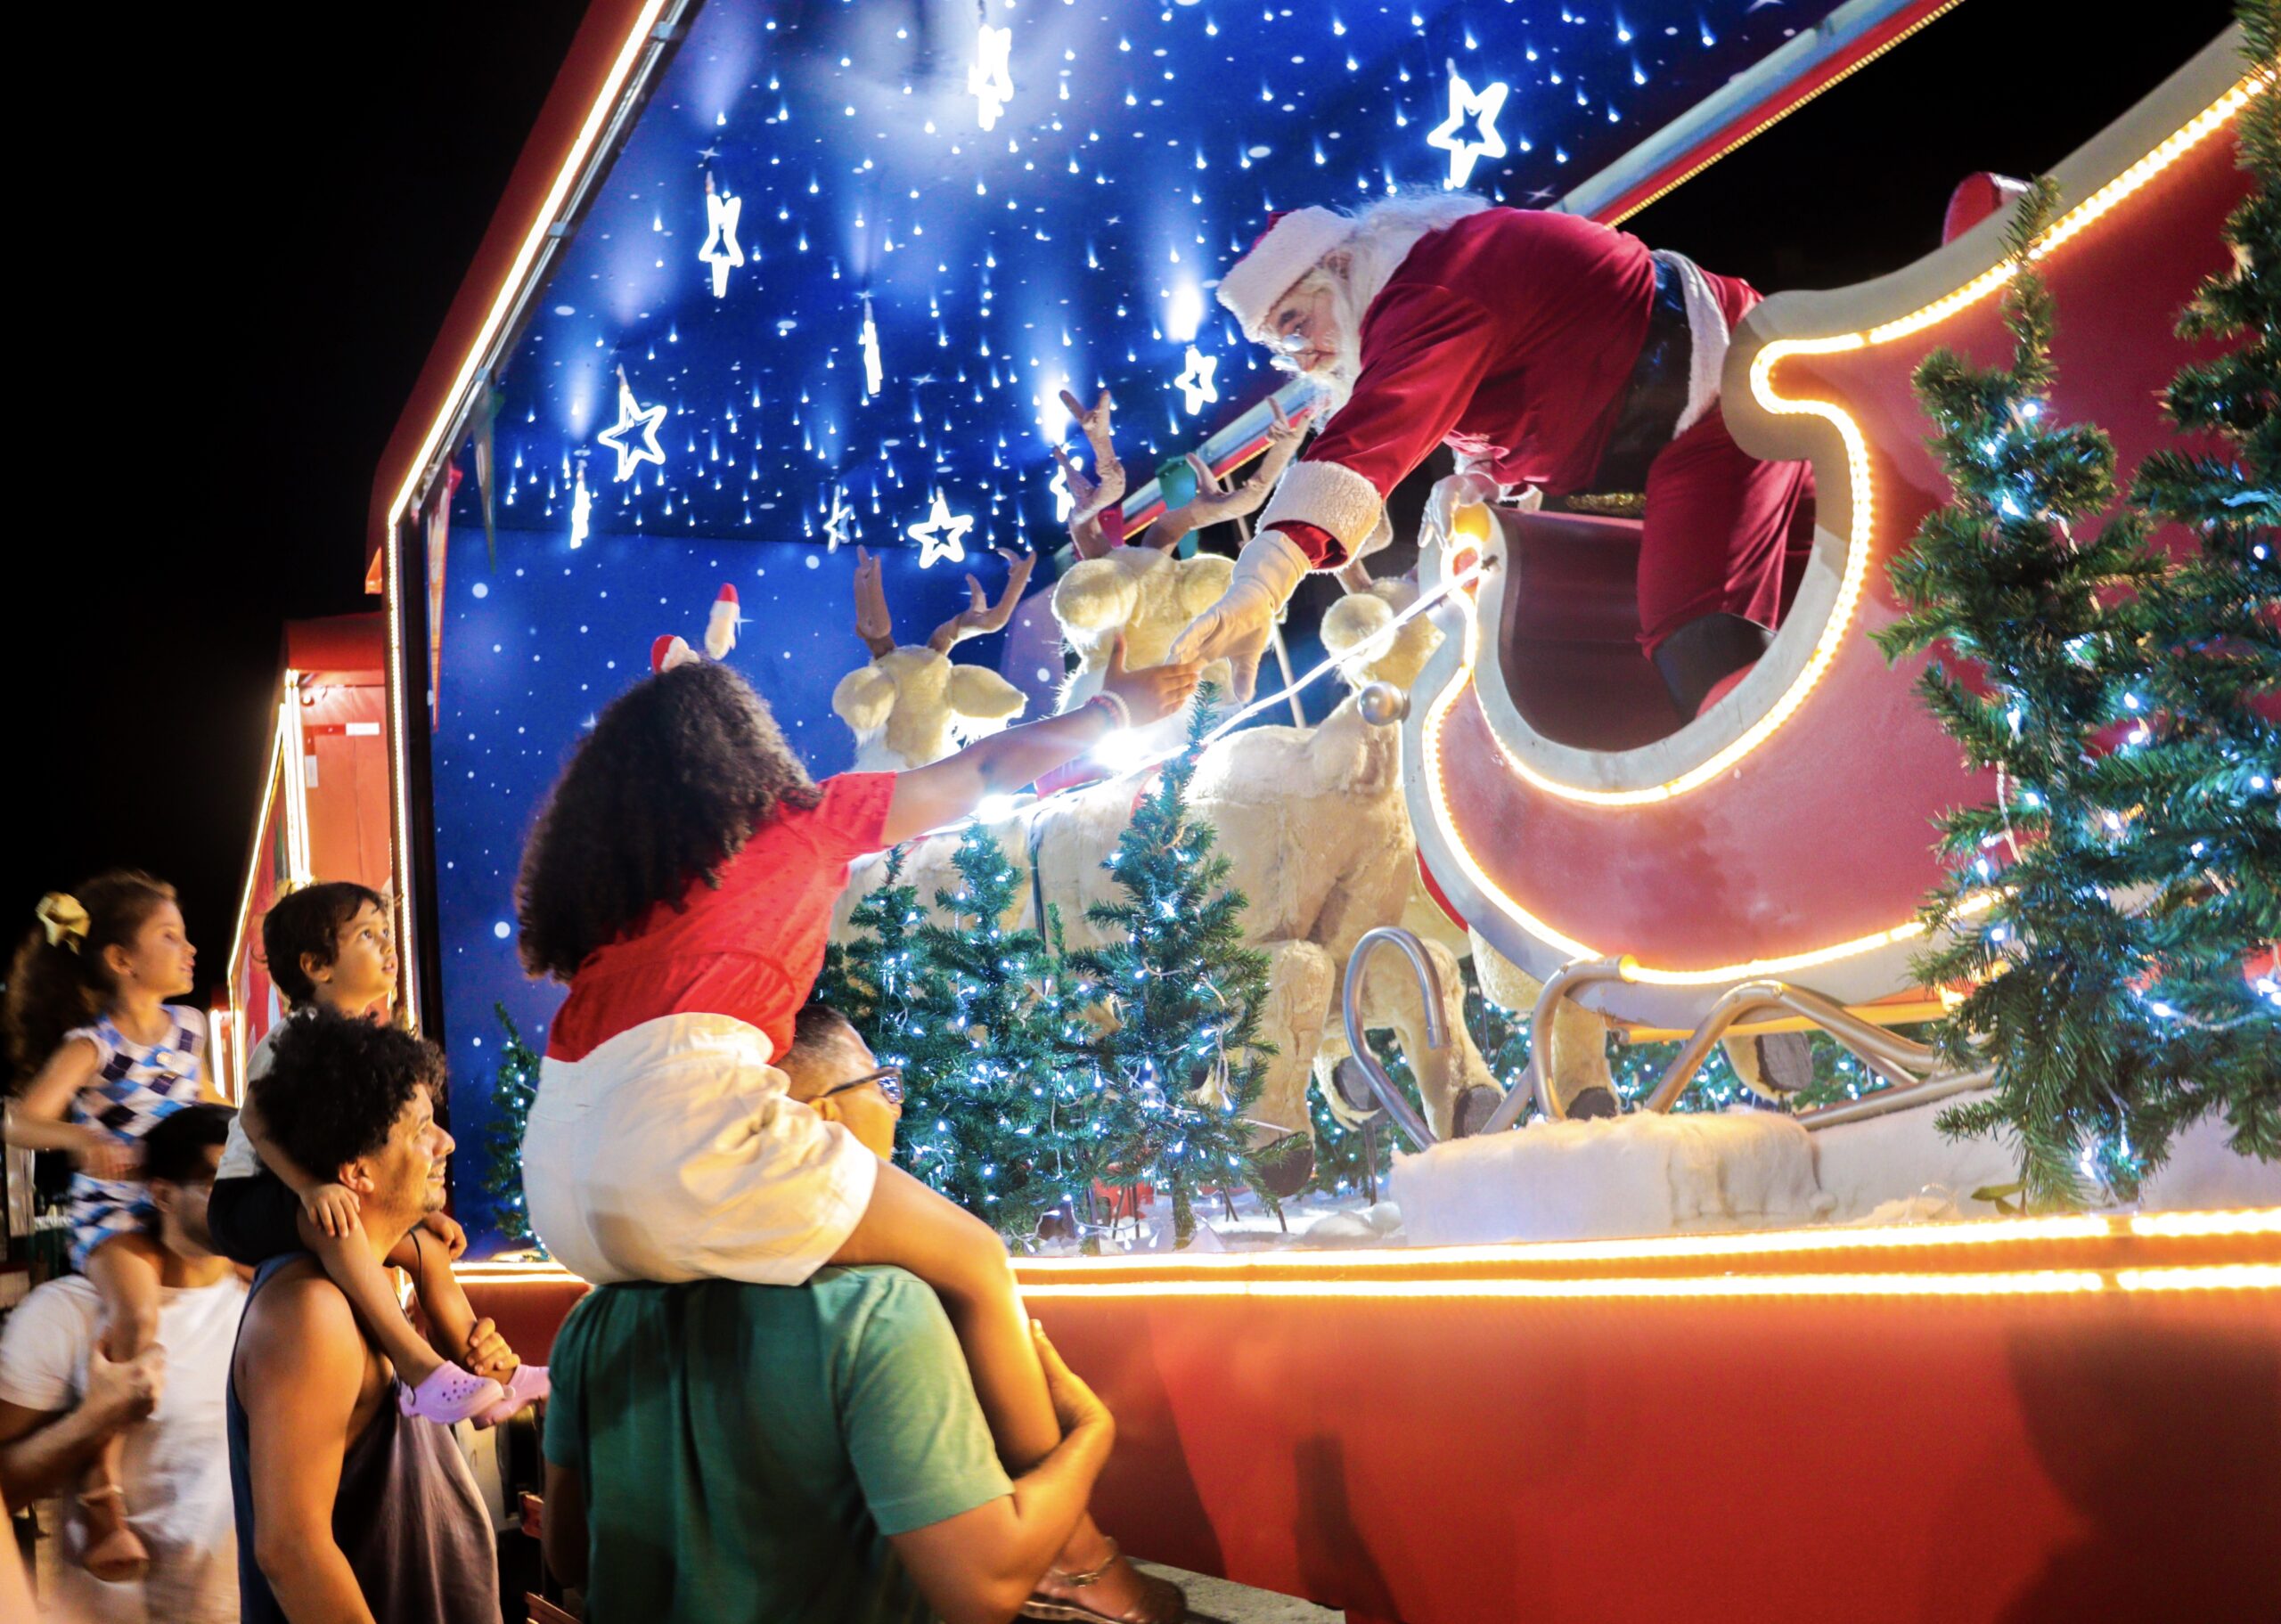 Ruas e avenidas de Natal e Parnamirim recebem uma caravana natalina com caminhões iluminados e Papai Noel na próxima segunda-feira (4), em comemoração à chegada do período festivo.